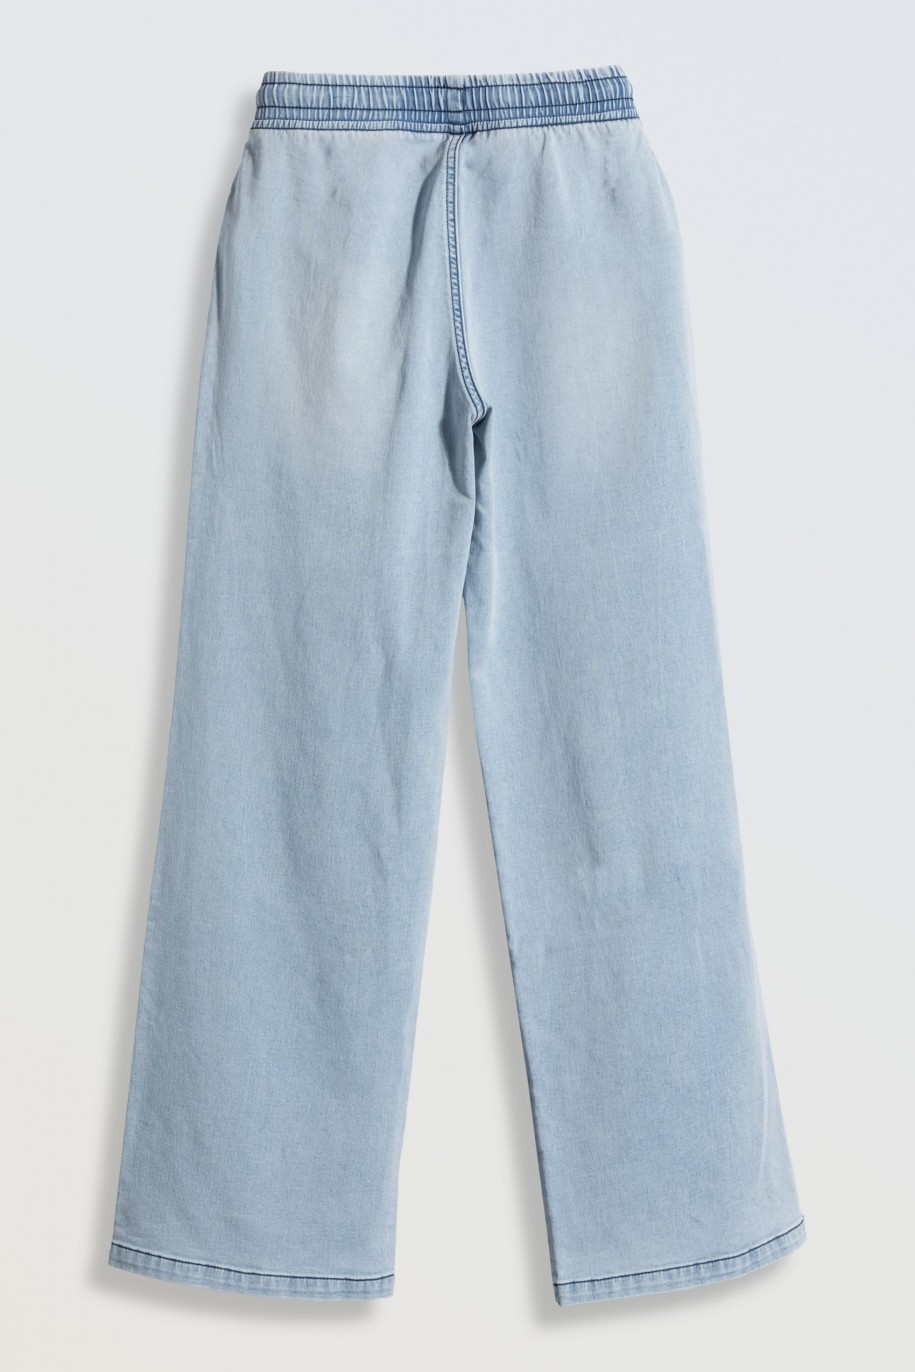 Jasnoniebieskie jeansy z szerokimi nogawkami - 46174